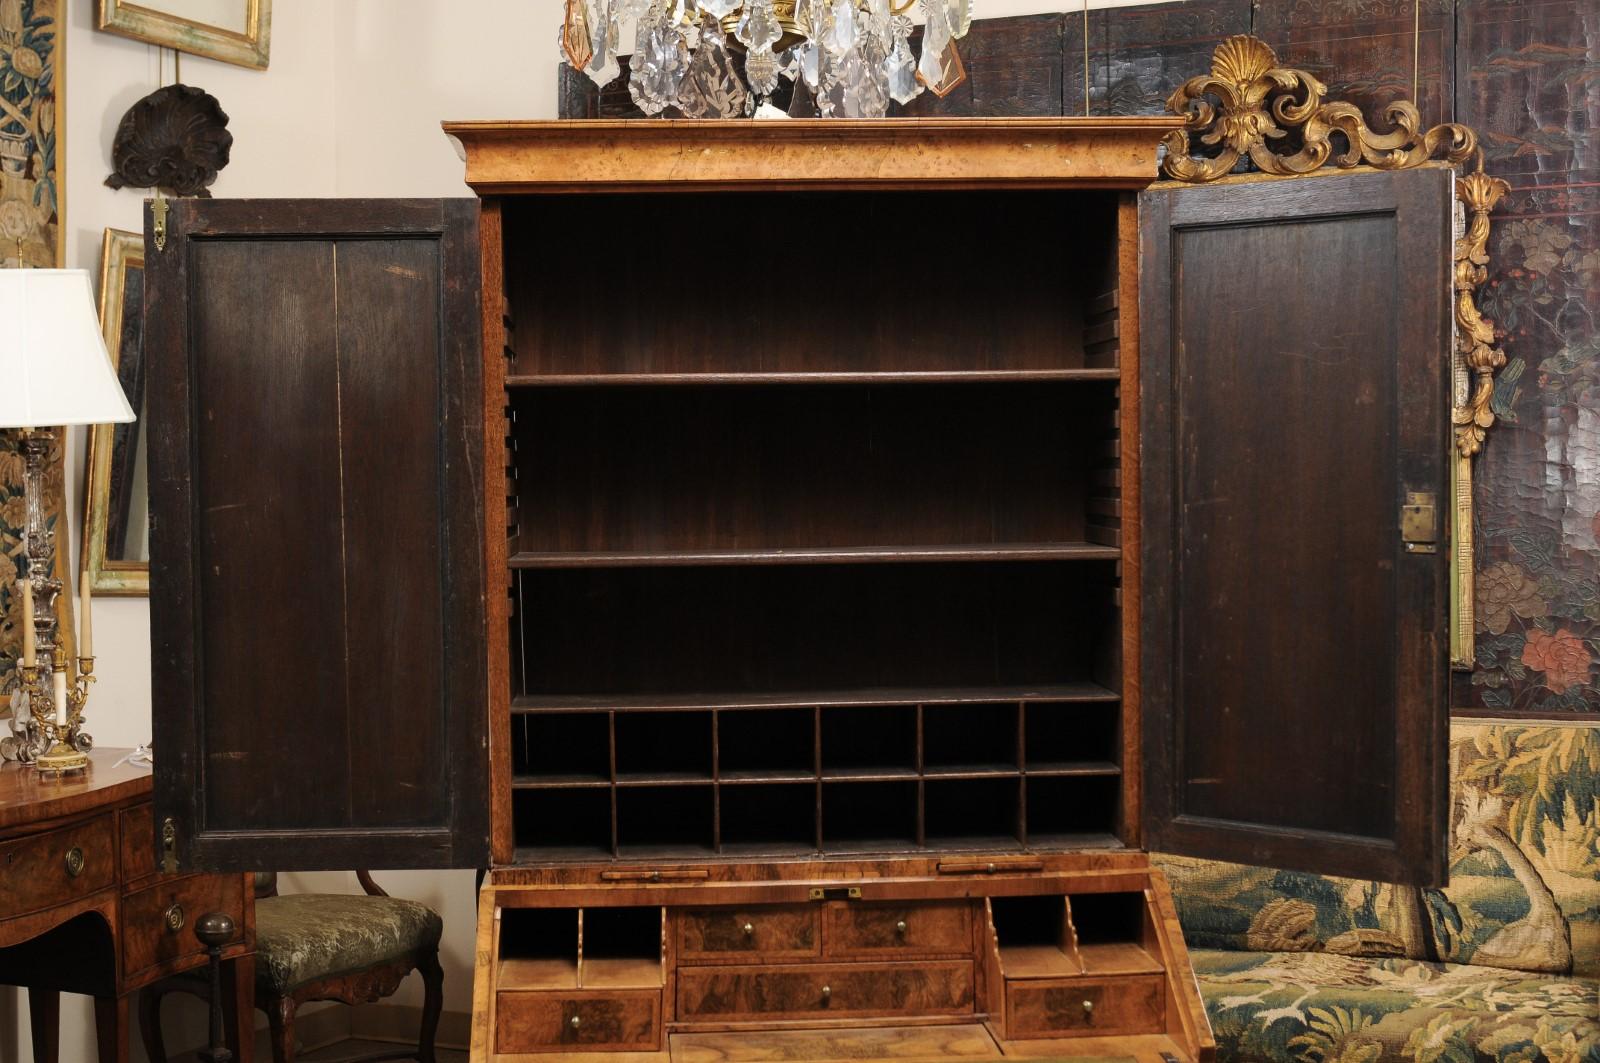 Embossed William & Mary Style Burled Walnut English Bureau Bookcase, Early 18th Century